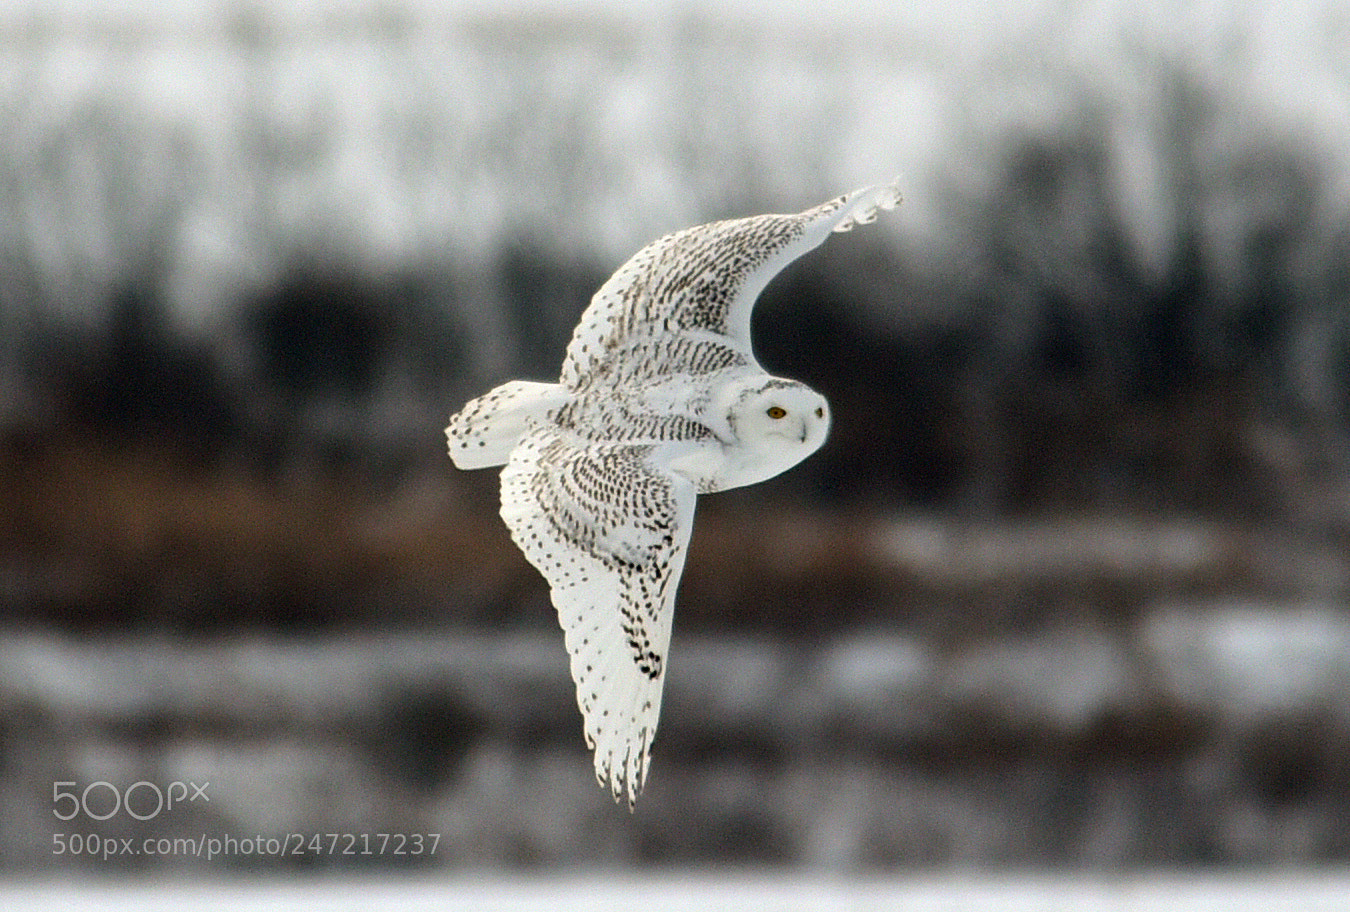 Nikon D750 sample photo. Snowy owl photography